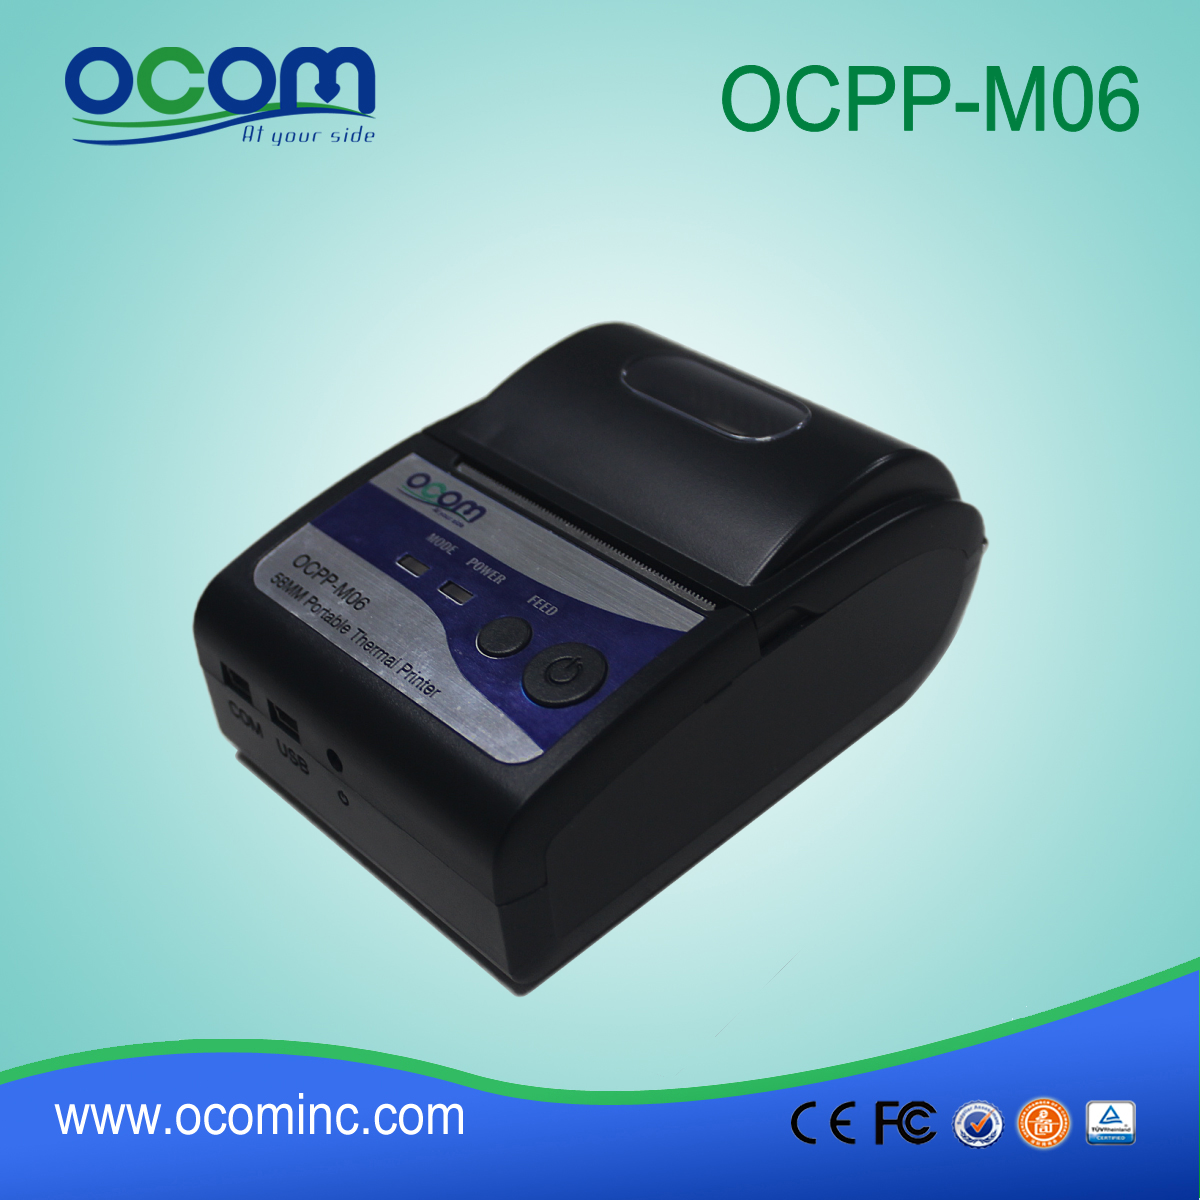 2016年58毫米便携式蓝牙迷你打印机（OCPP-M06）